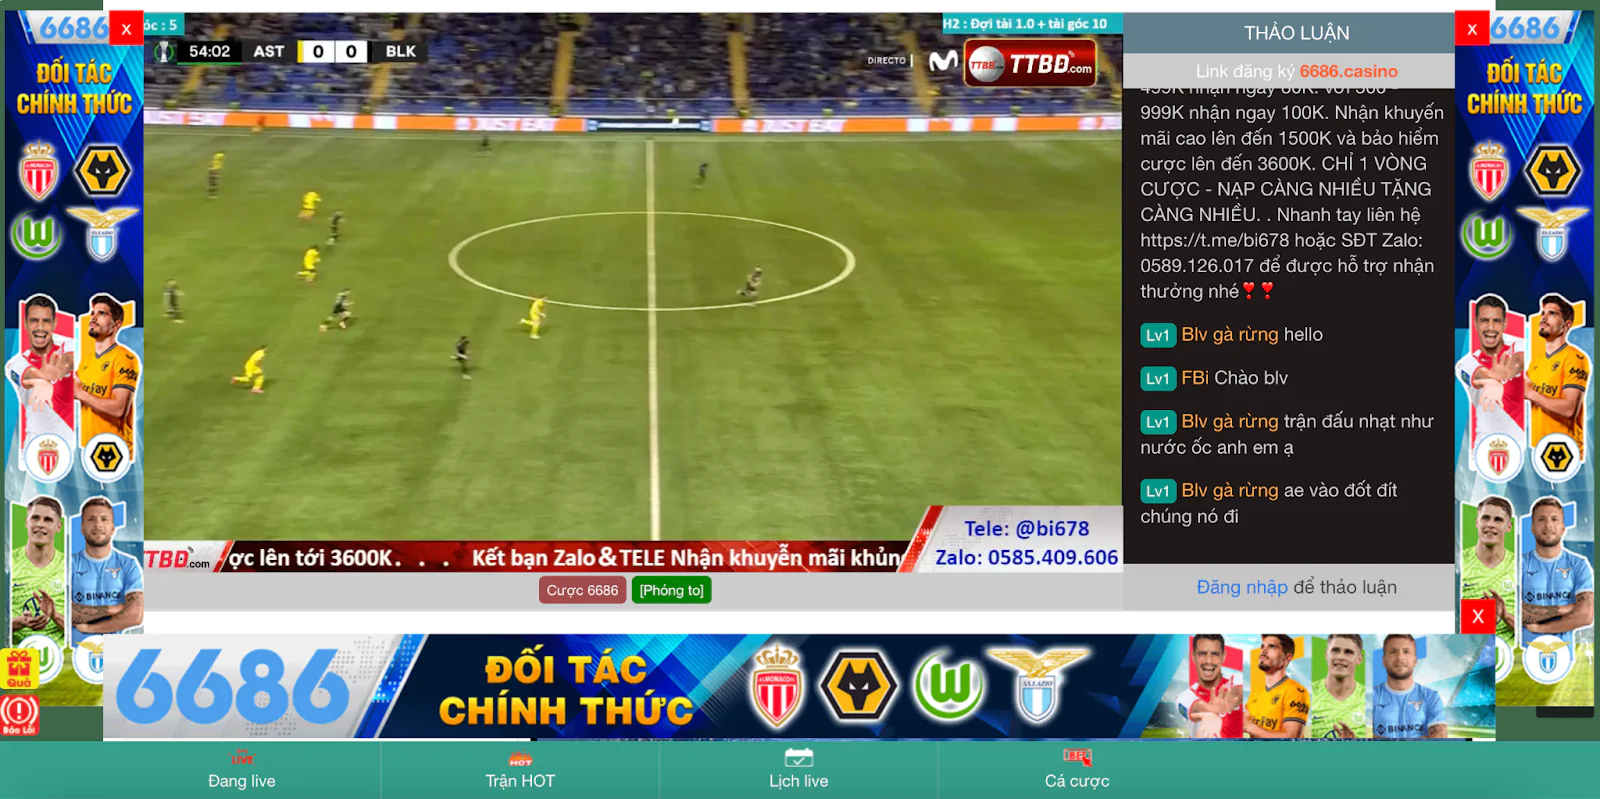 Xoilac TV - Trang web trực tiếp bóng đá nói không với quảng cáo làm phiền